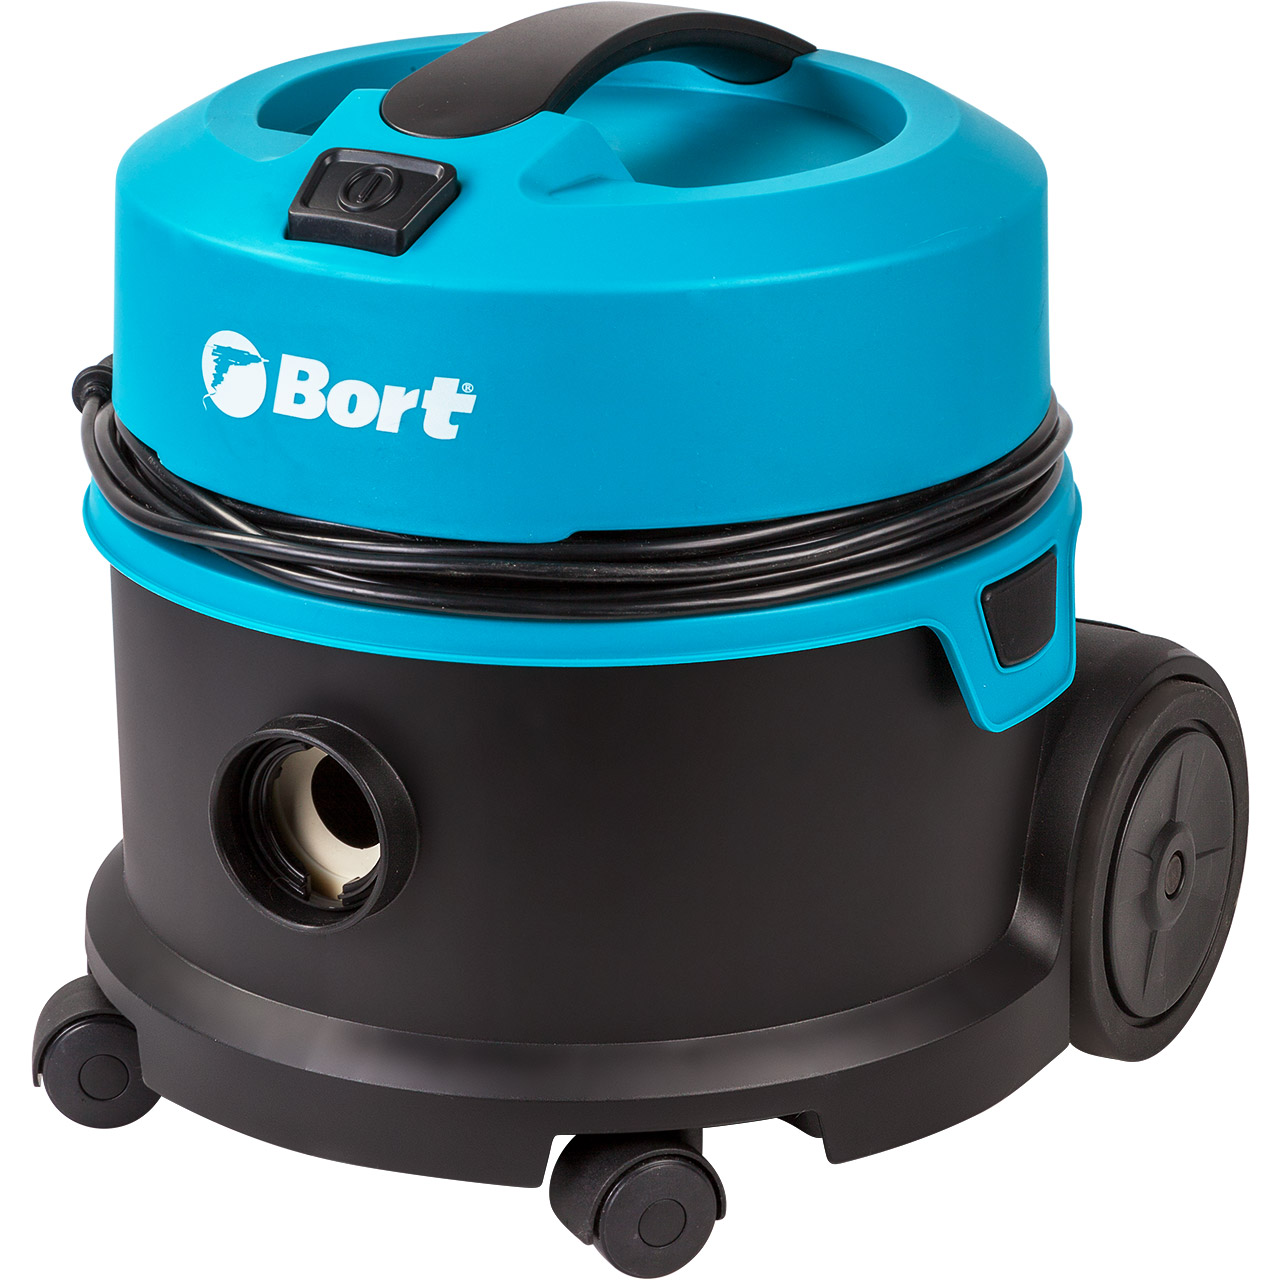 Строительный пылесос Bort BSS-1010HD, сетевой, 1 кВт, сухая уборка, объем пылесборника 10 л, мешок, диаметр шланга 3.5 см, длина шланга 2.5 м, 6.4 кг (91204467)